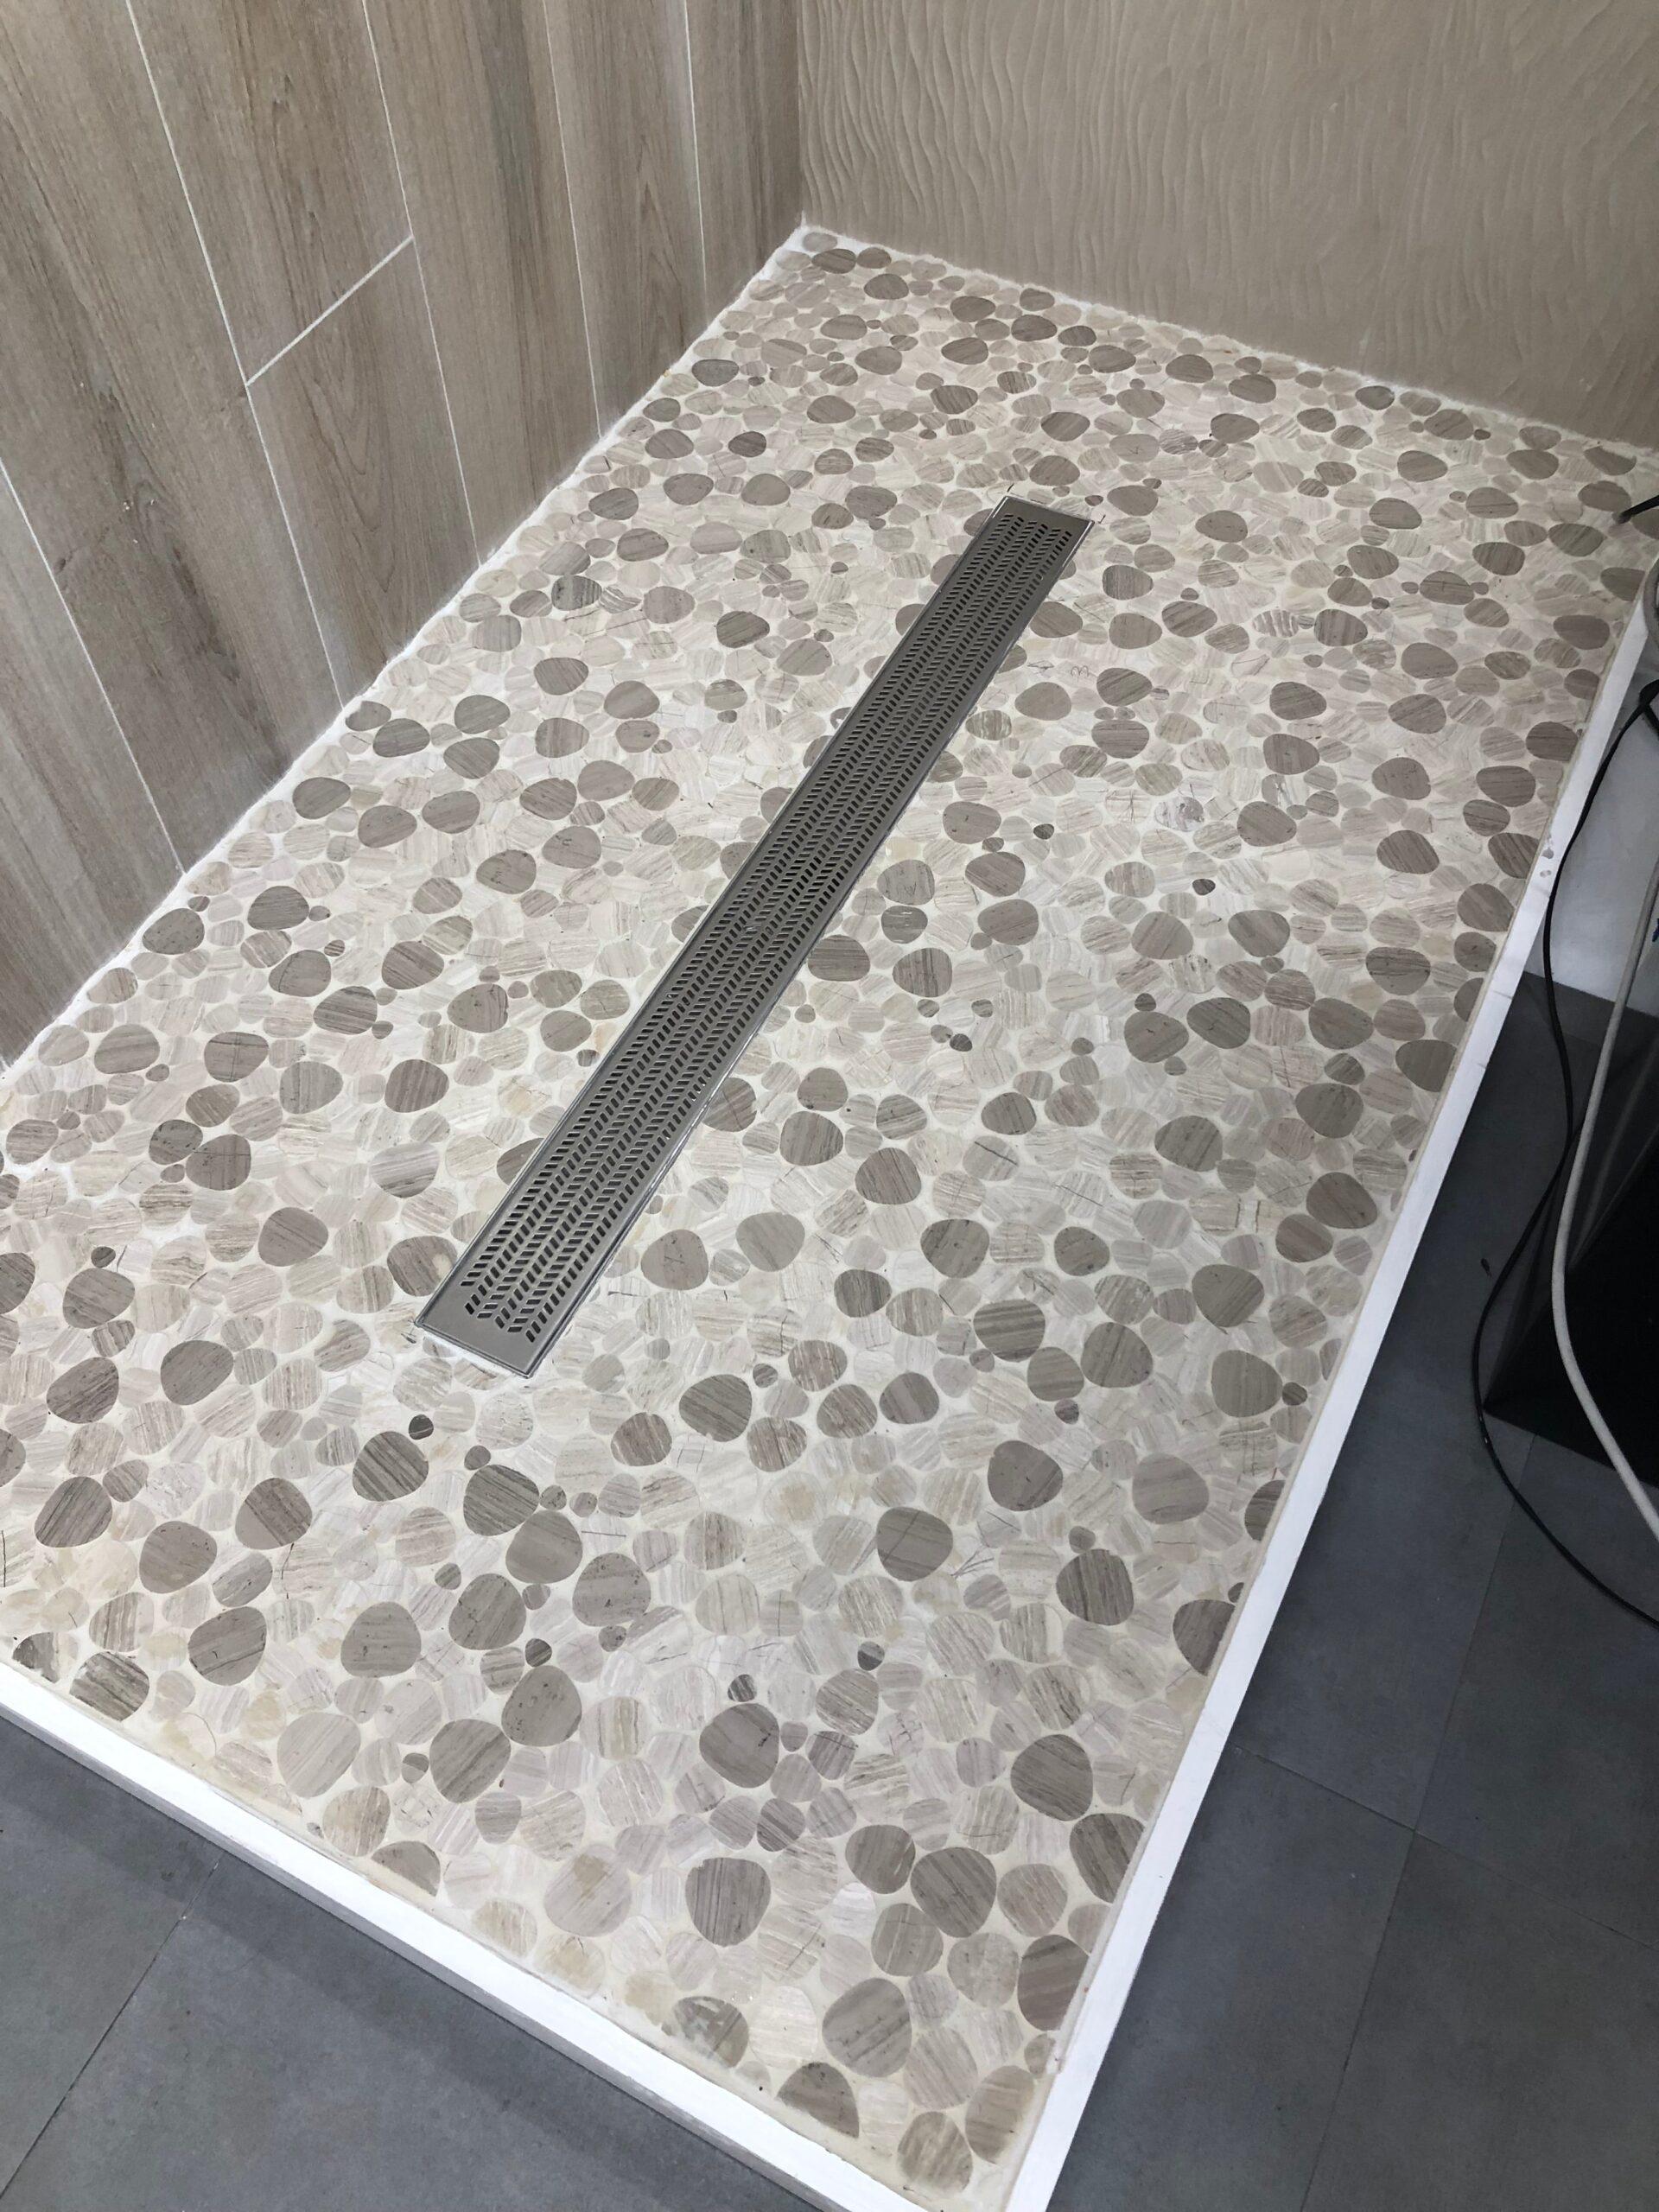 heart shaped tiles on shower floor